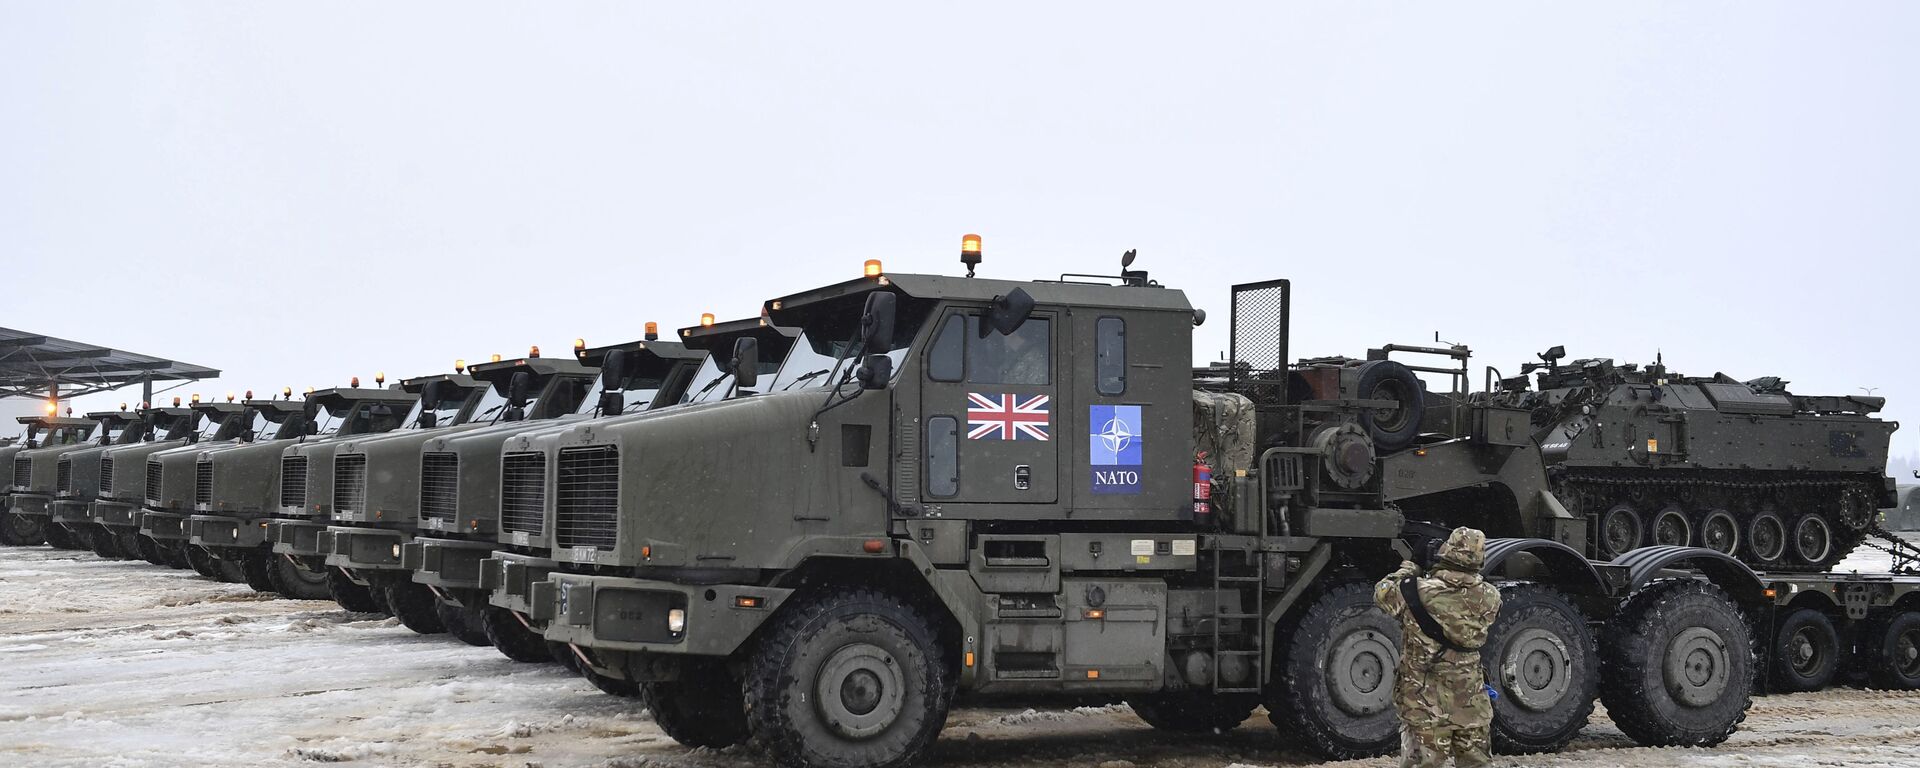 Tanques em plataformas de caminhões militares do Reino Unido, com tropas e equipamento militar, chegam à base da OTAN em Tapa, Estônia, 25 de fevereiro de 2022 - Sputnik Brasil, 1920, 22.04.2022